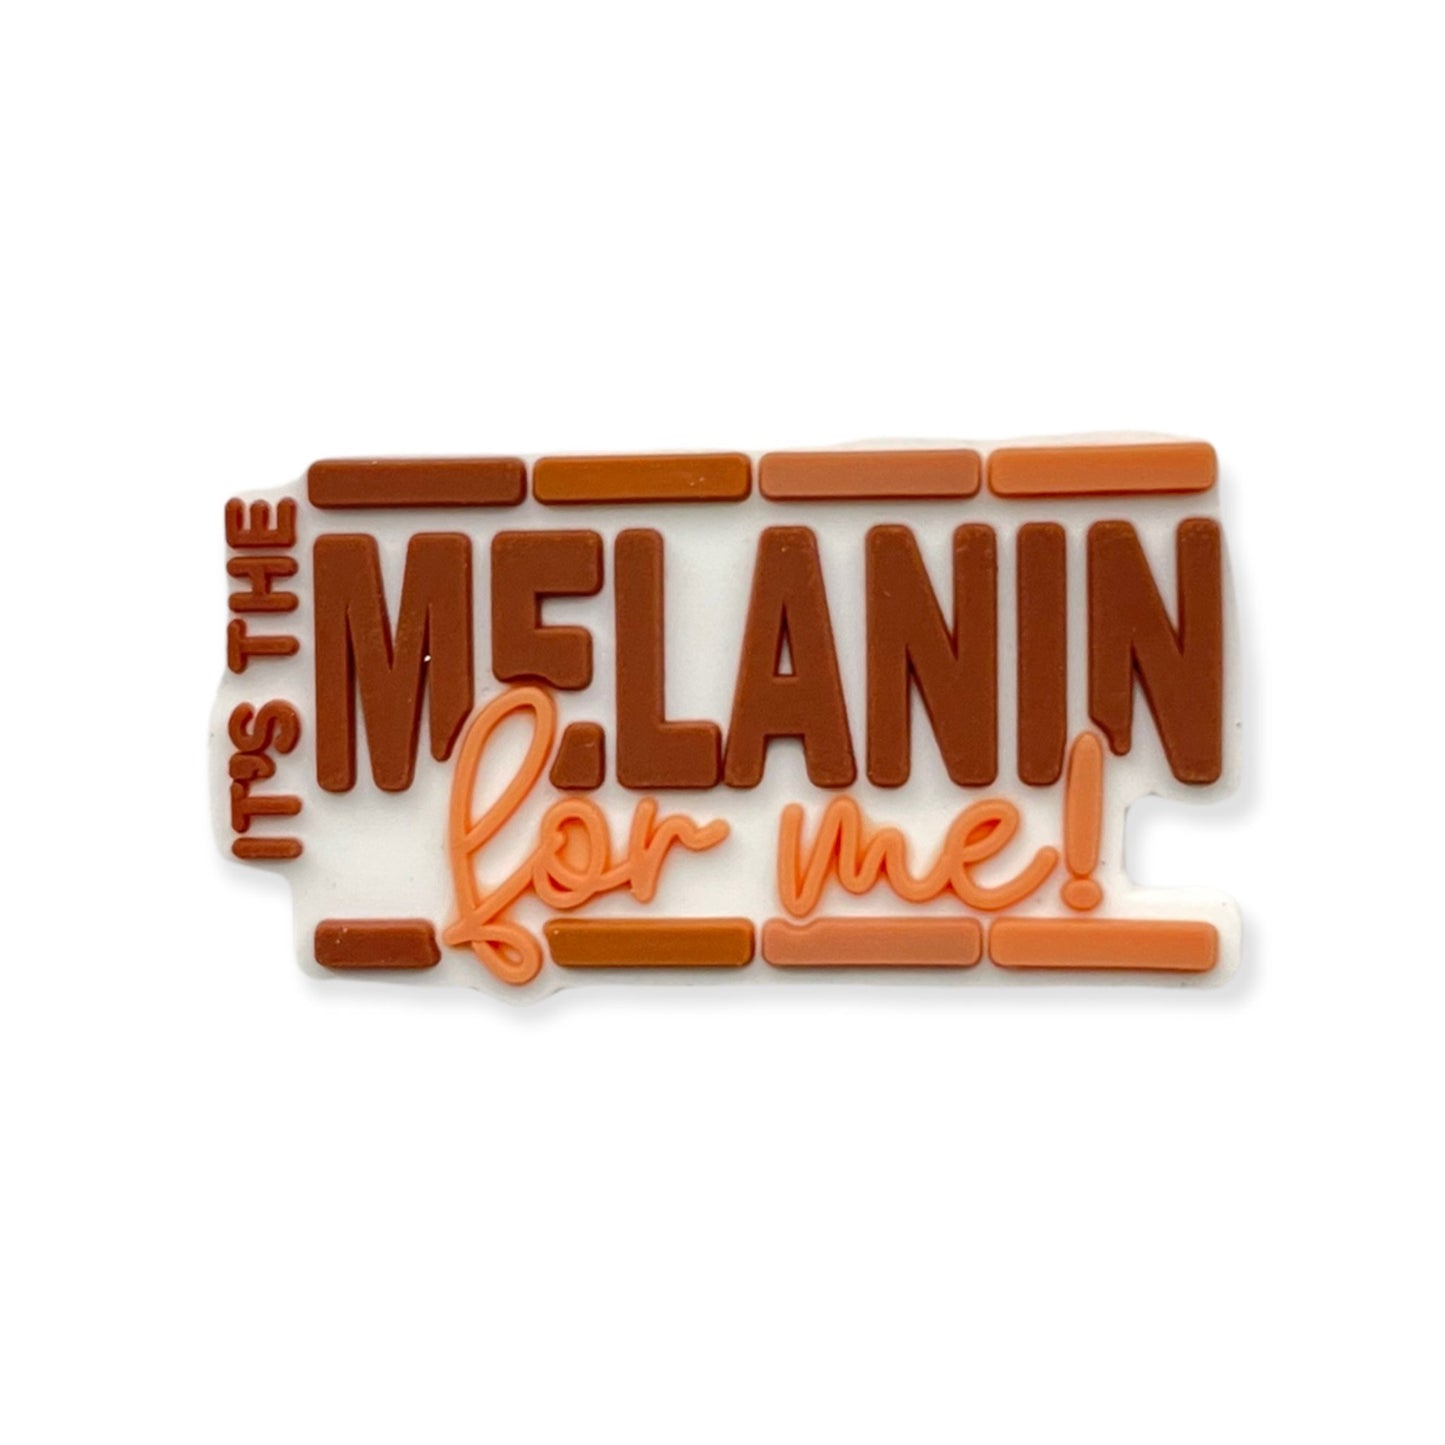 It's The Melanin